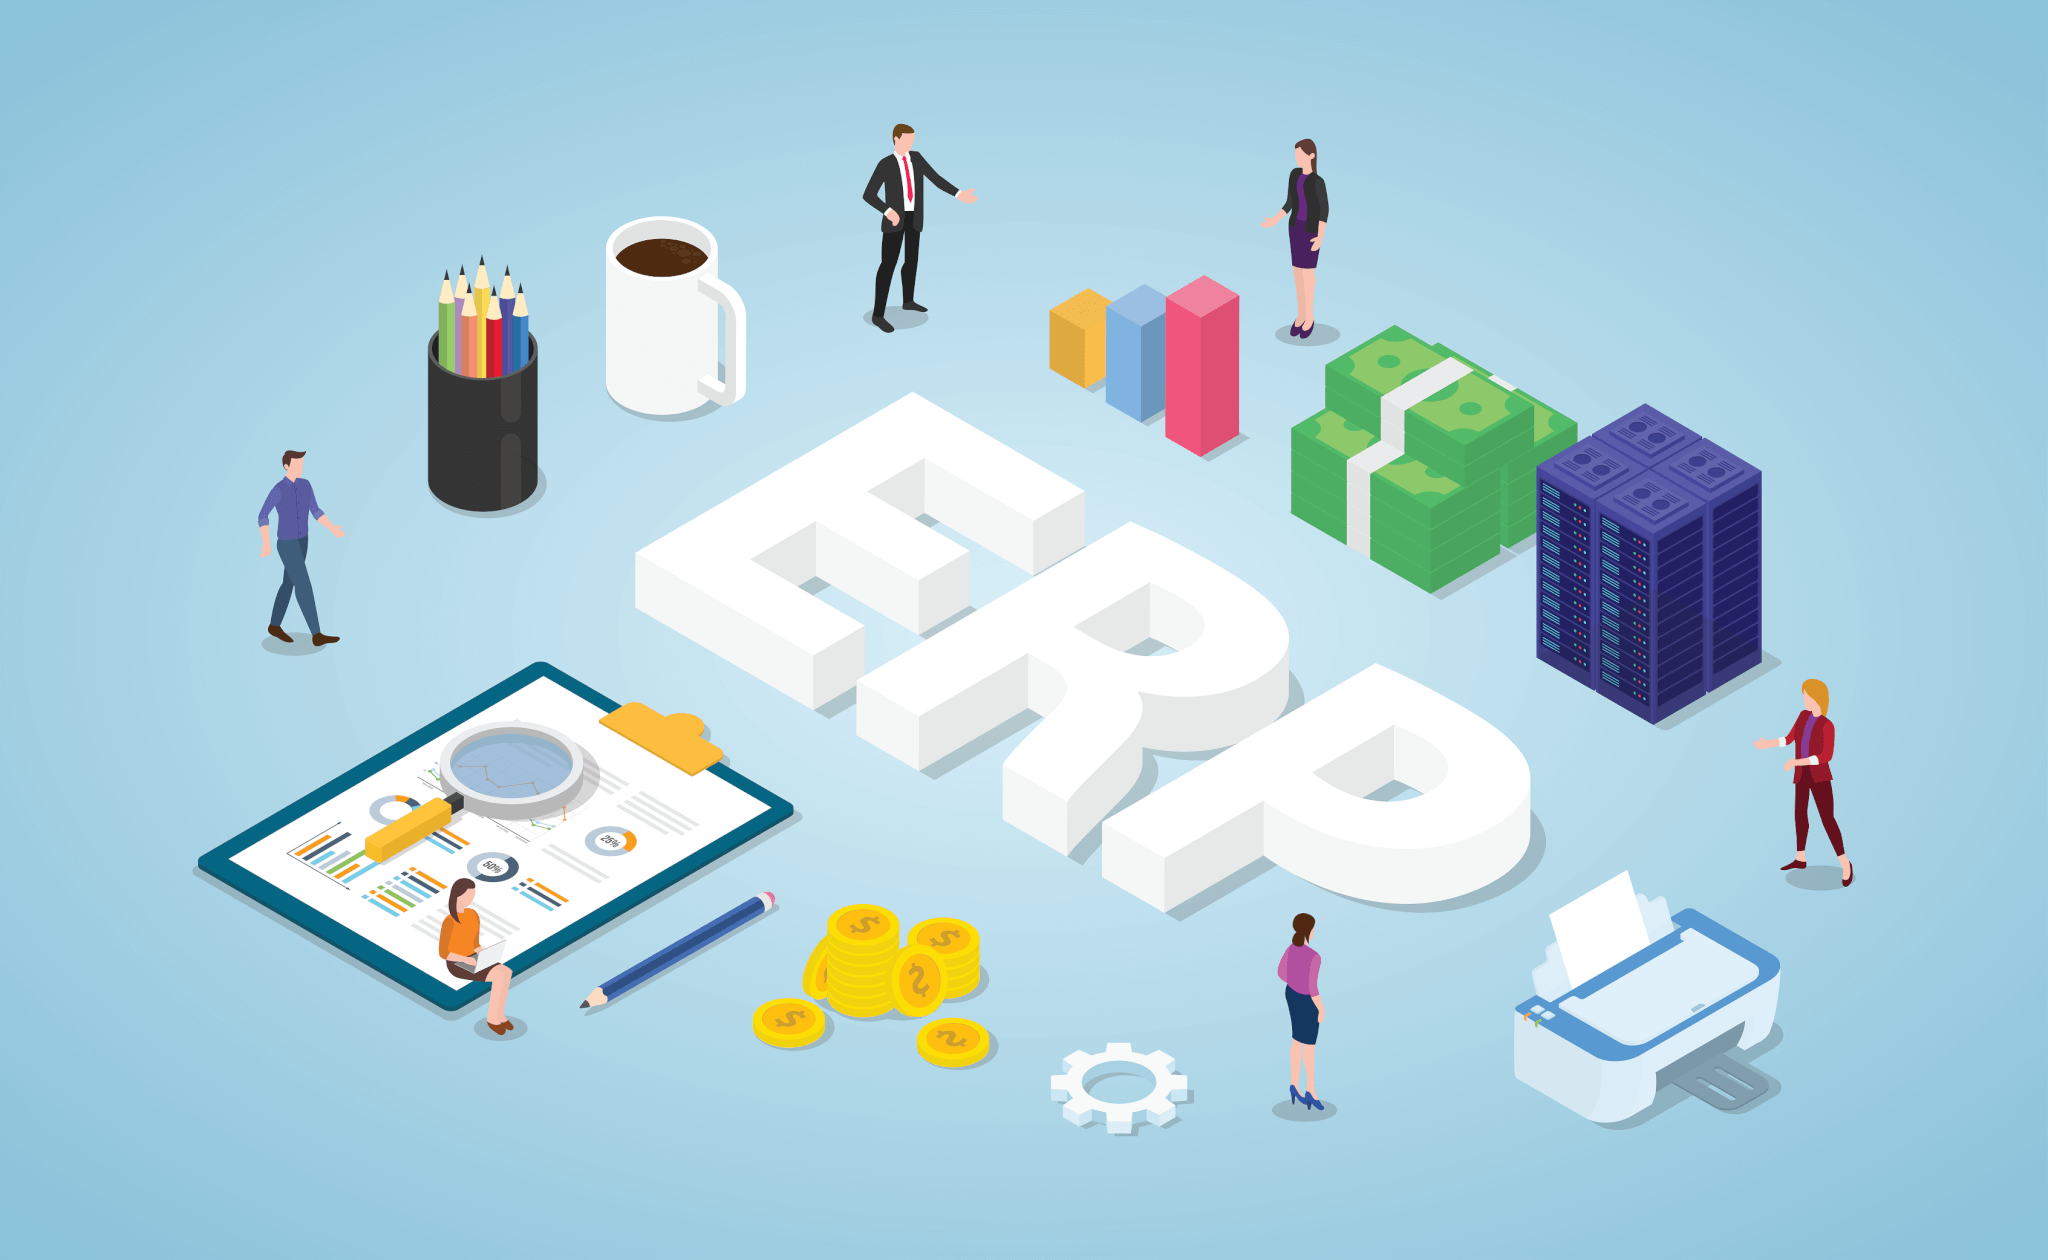 برنامه‌ریزی منابع سازمانی یا ERP چیست؟